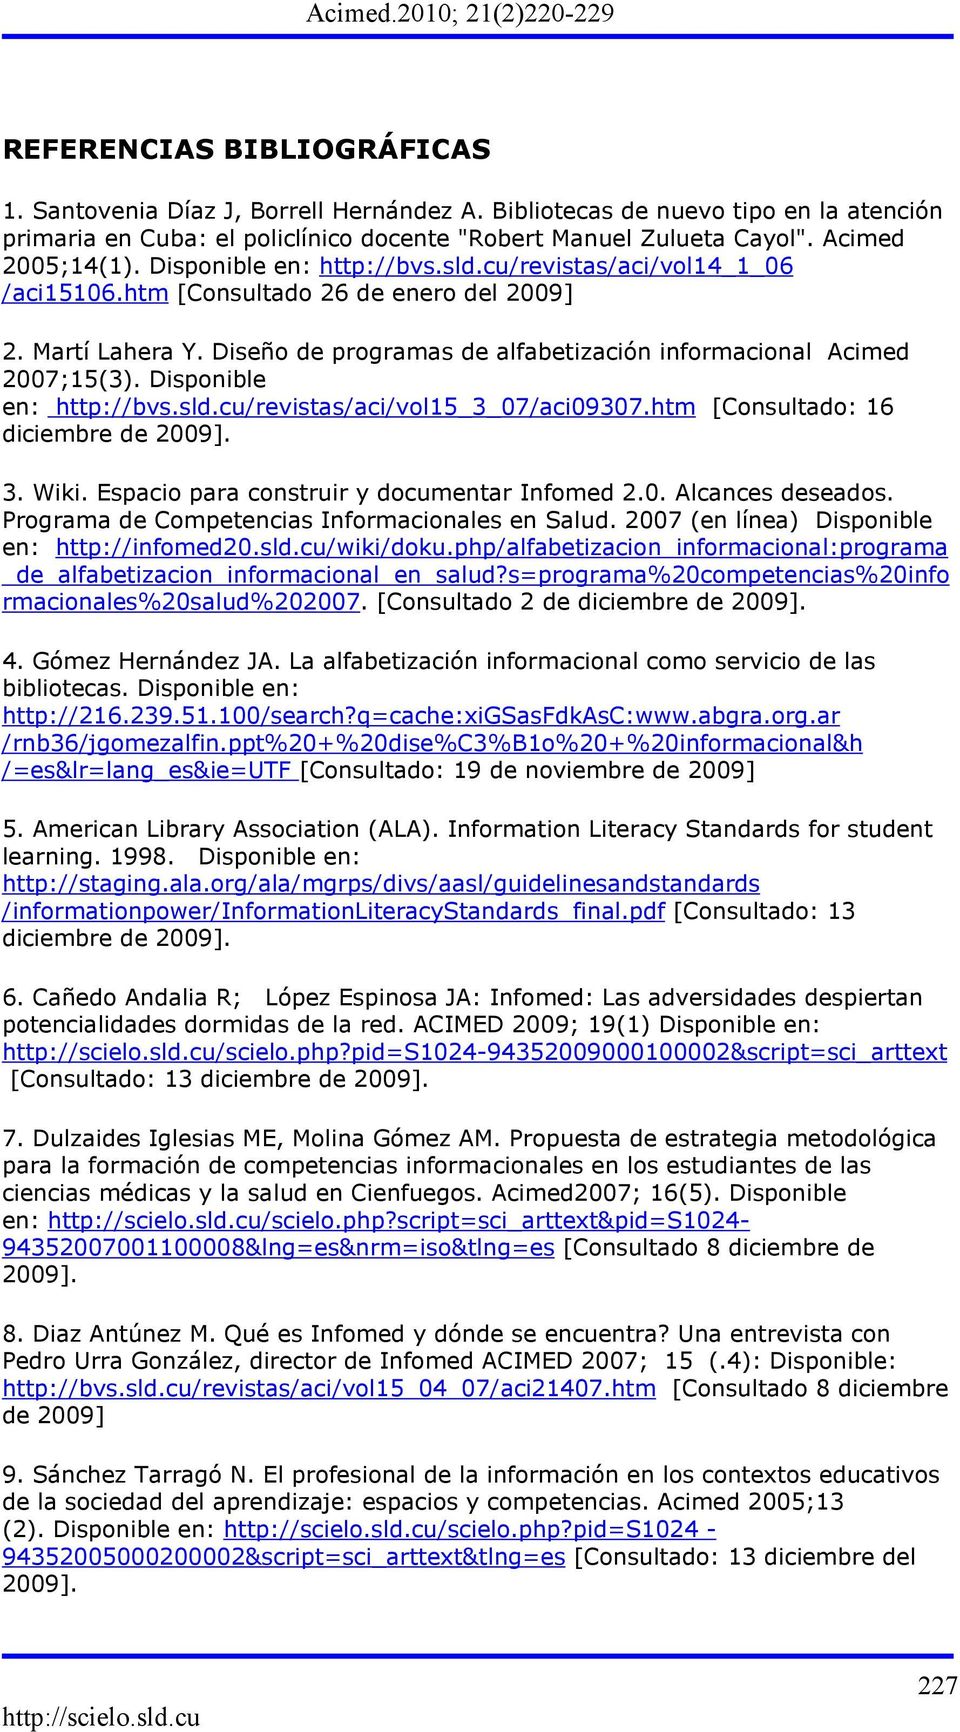 Diseño de programas de alfabetización informacional Acimed 2007;15(3). Disponible en: http://bvs.sld.cu/revistas/aci/vol15_3_07/aci09307.htm [Consultado: 16 diciembre de 2009]. 3. Wiki.